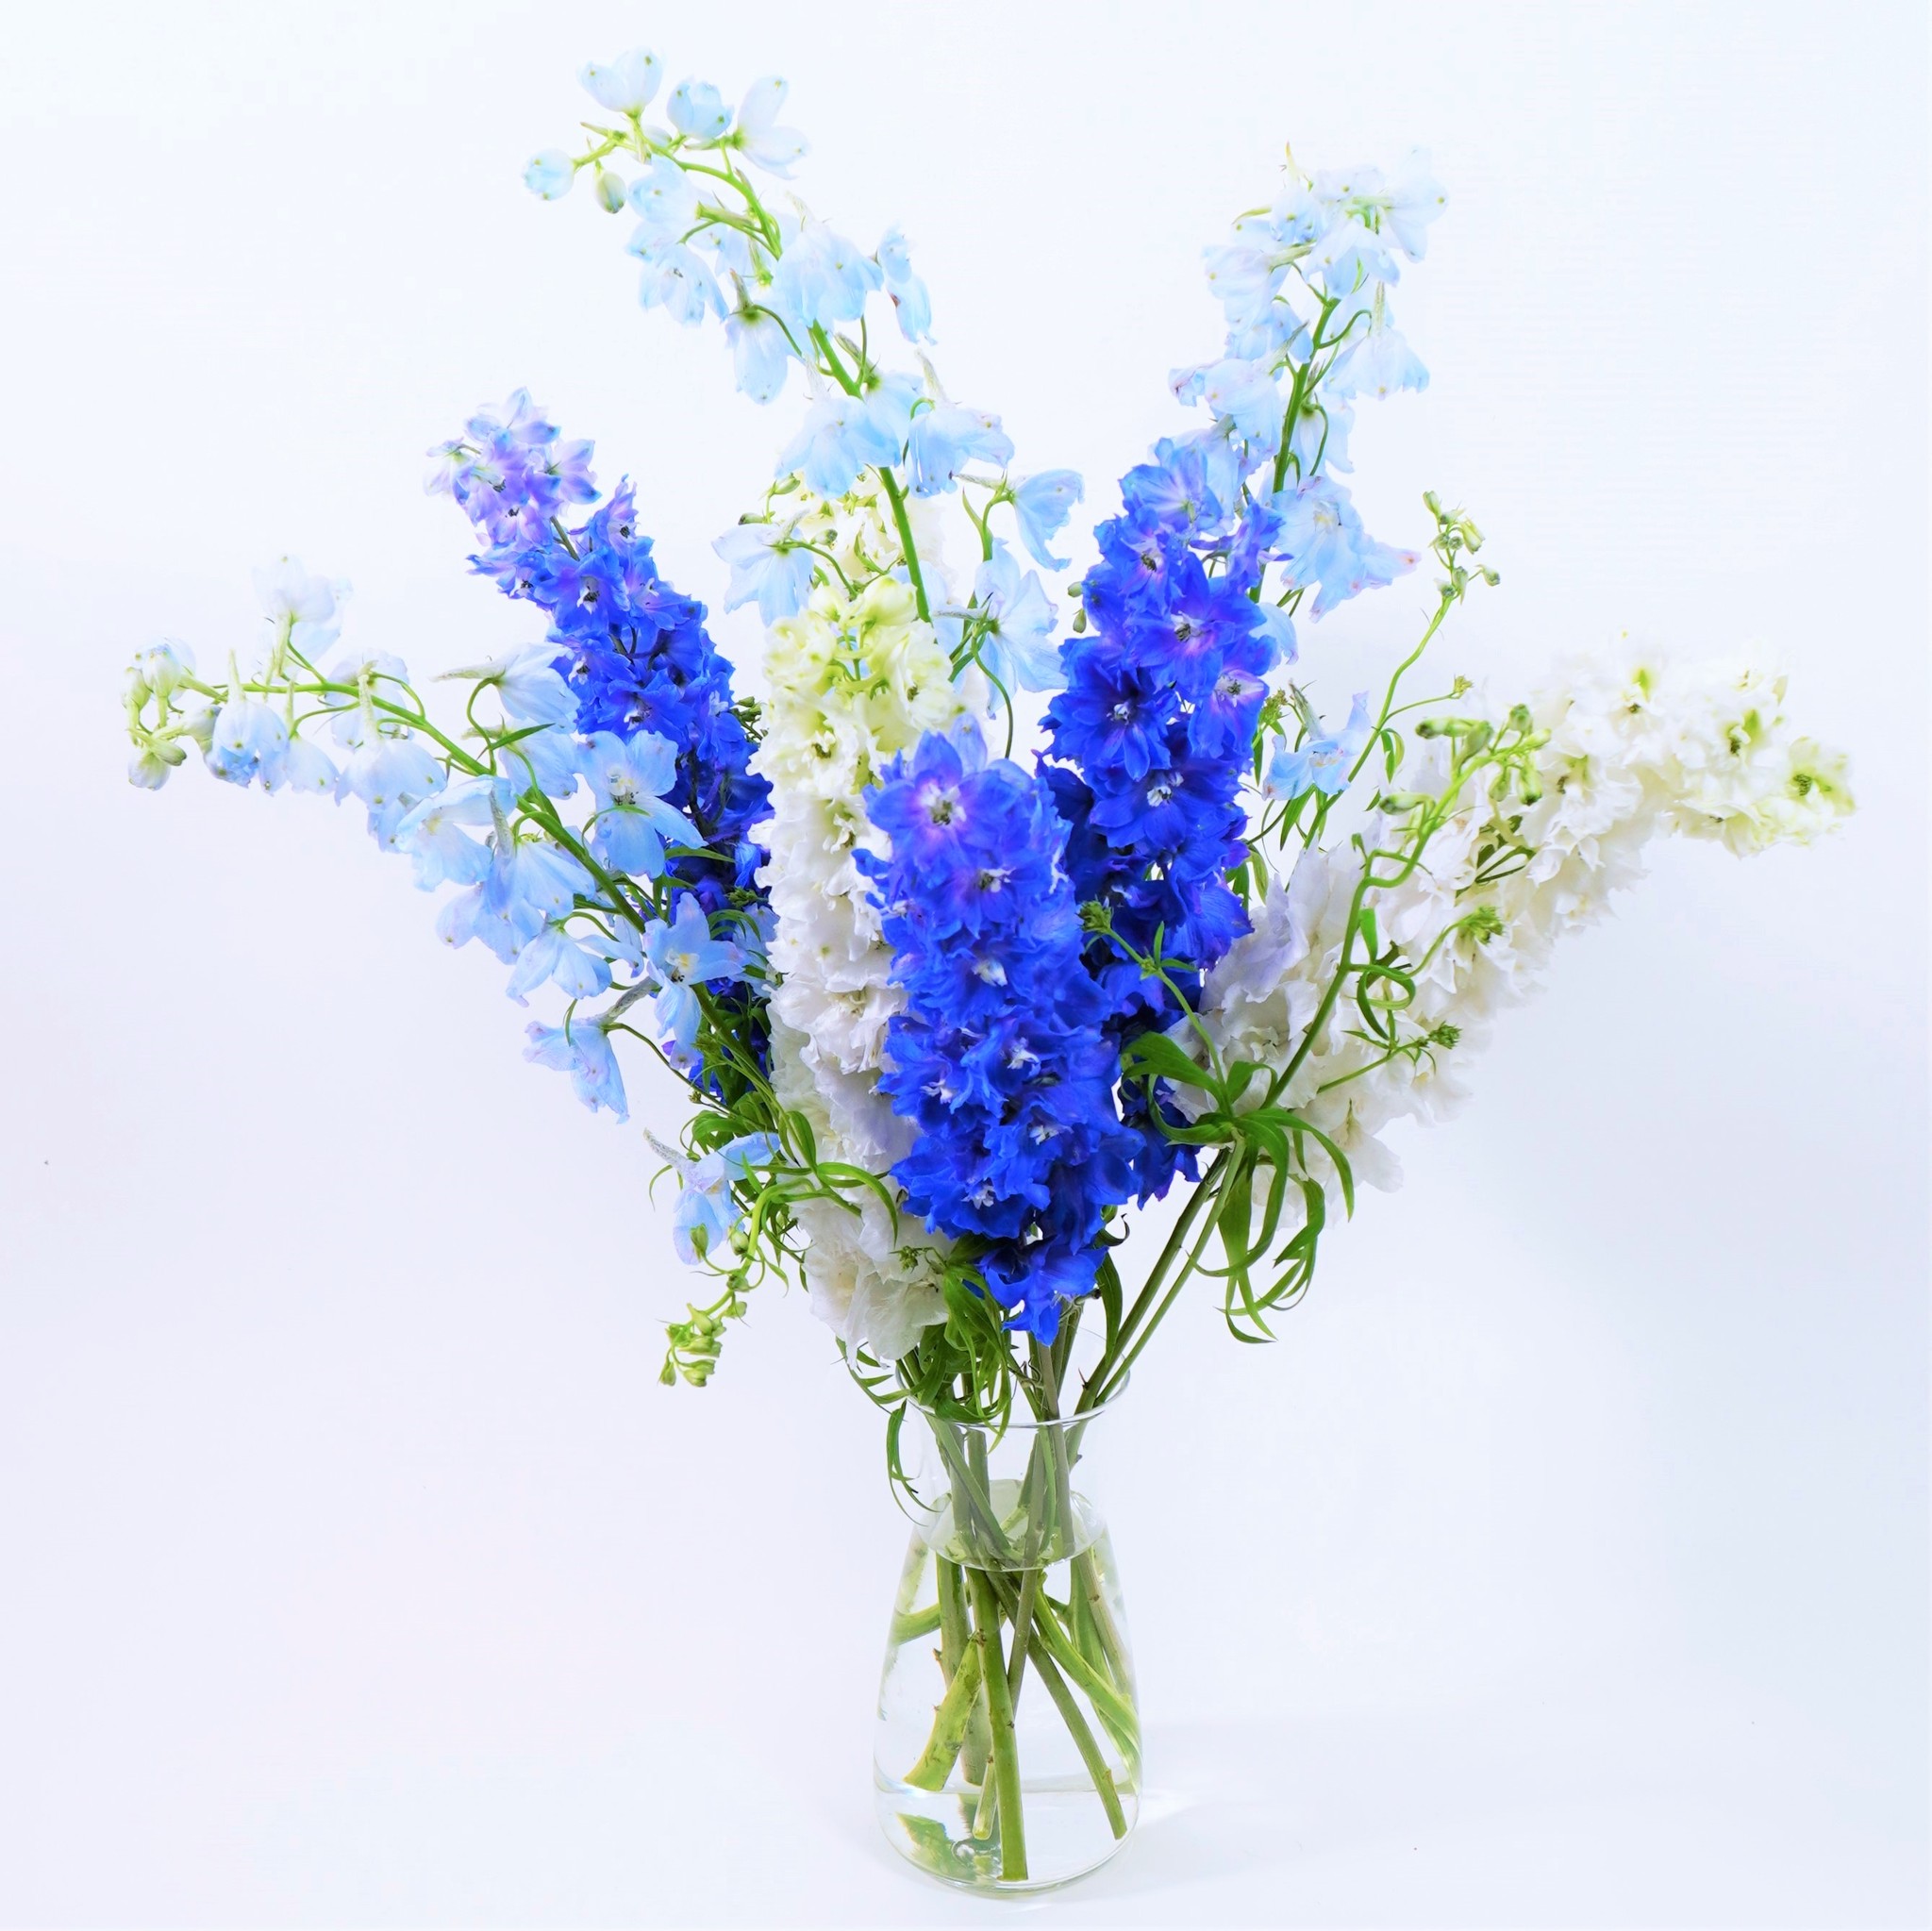 特集 Blueflowers 夏にぴったりな爽やかな北海道の青いデルフィニウムを贈りましょう よいはな Yoihana 最高品質のお花をお届けするネット通販